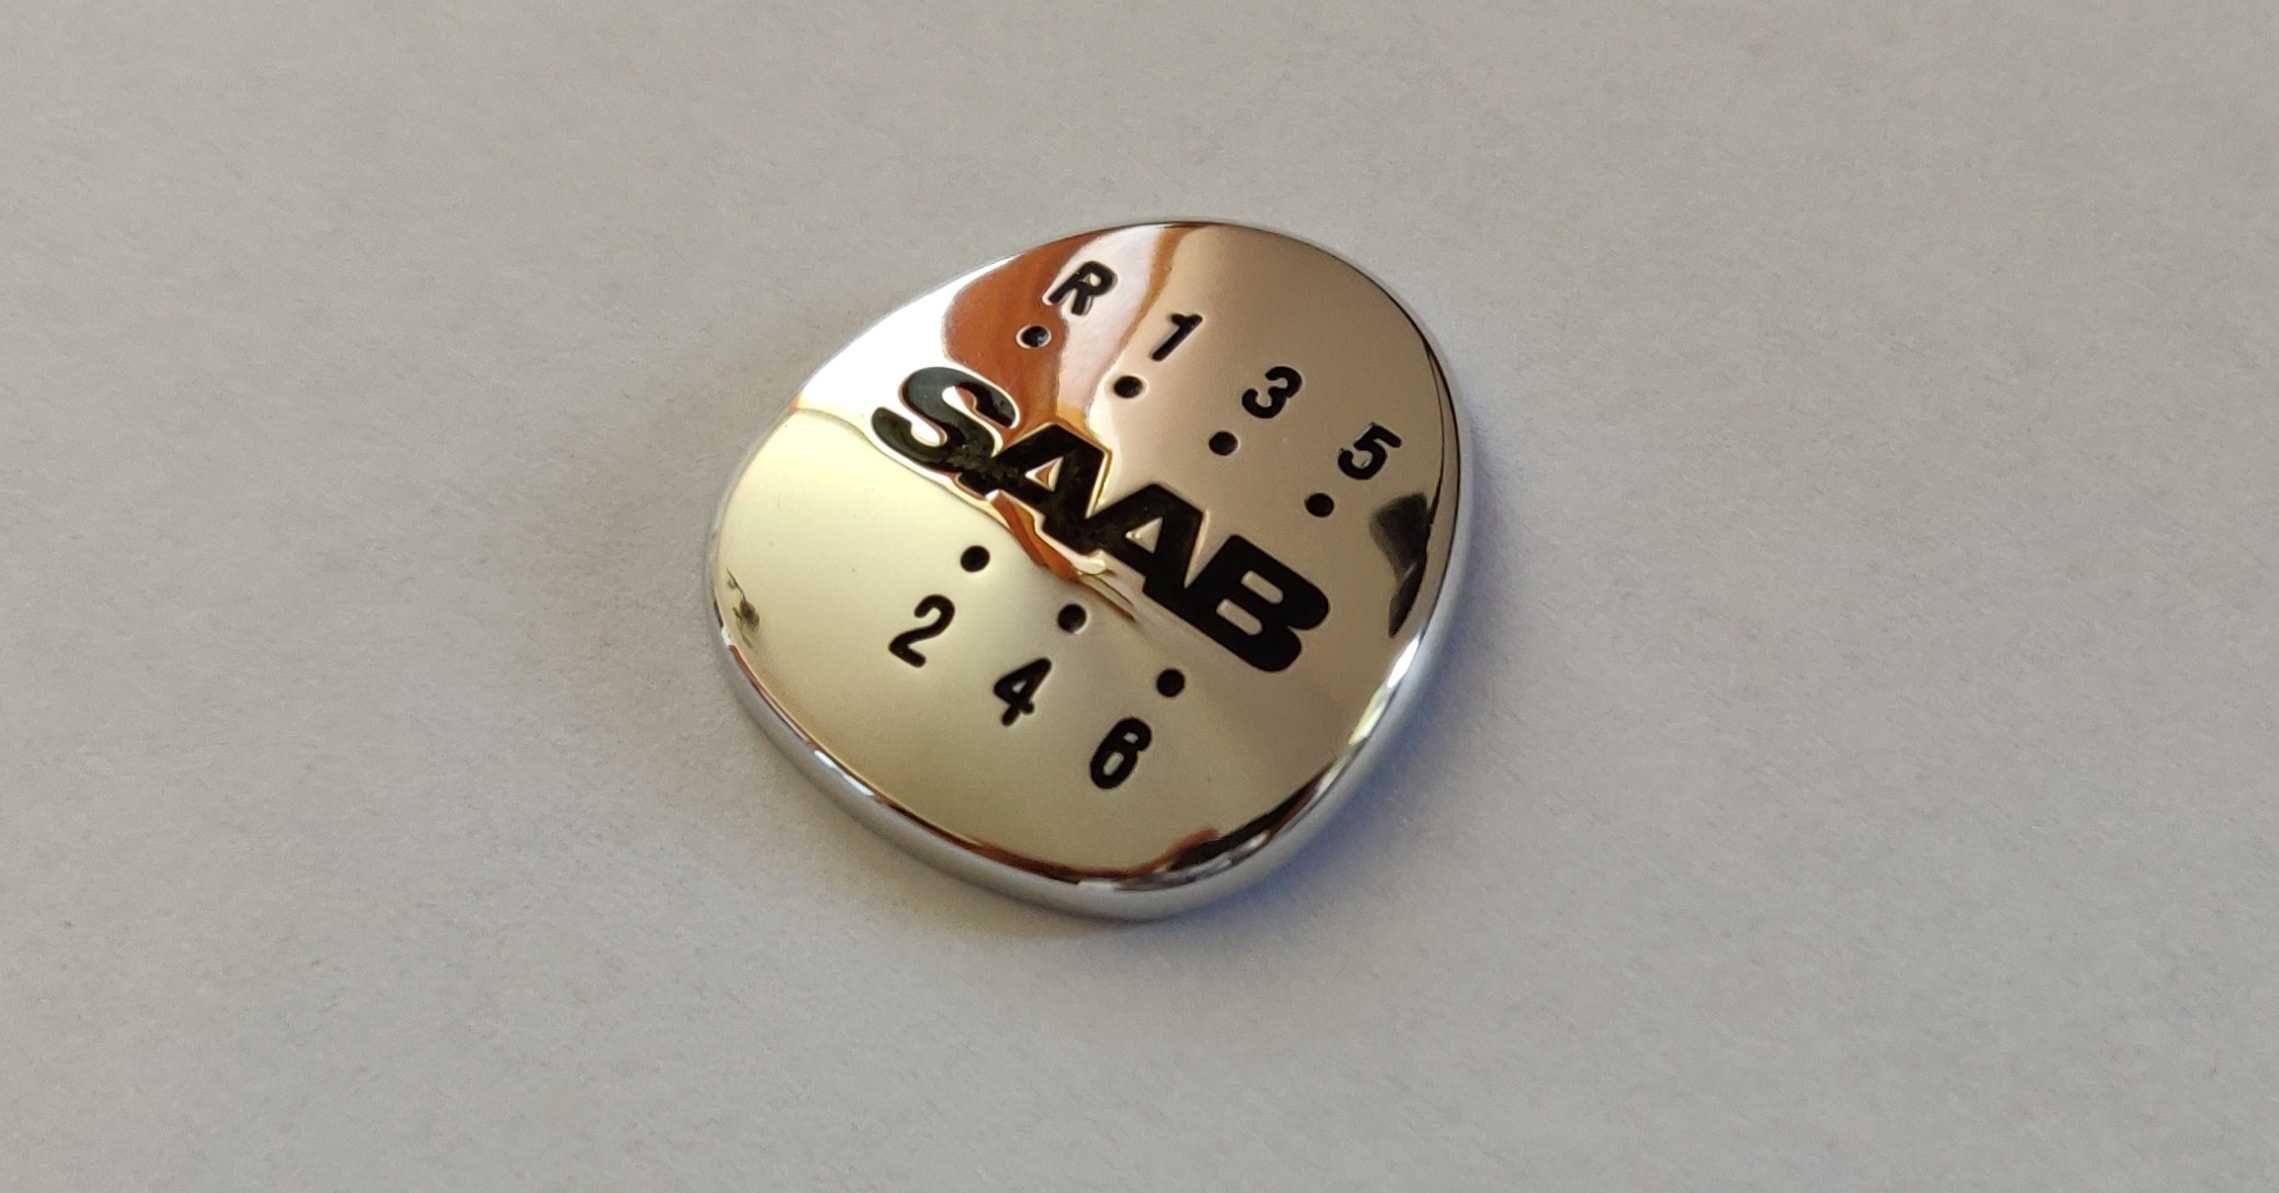 Gałka biegów, lewarek, Saab 93 9-3 - wkładka 5b i 6b, emblemat, logo